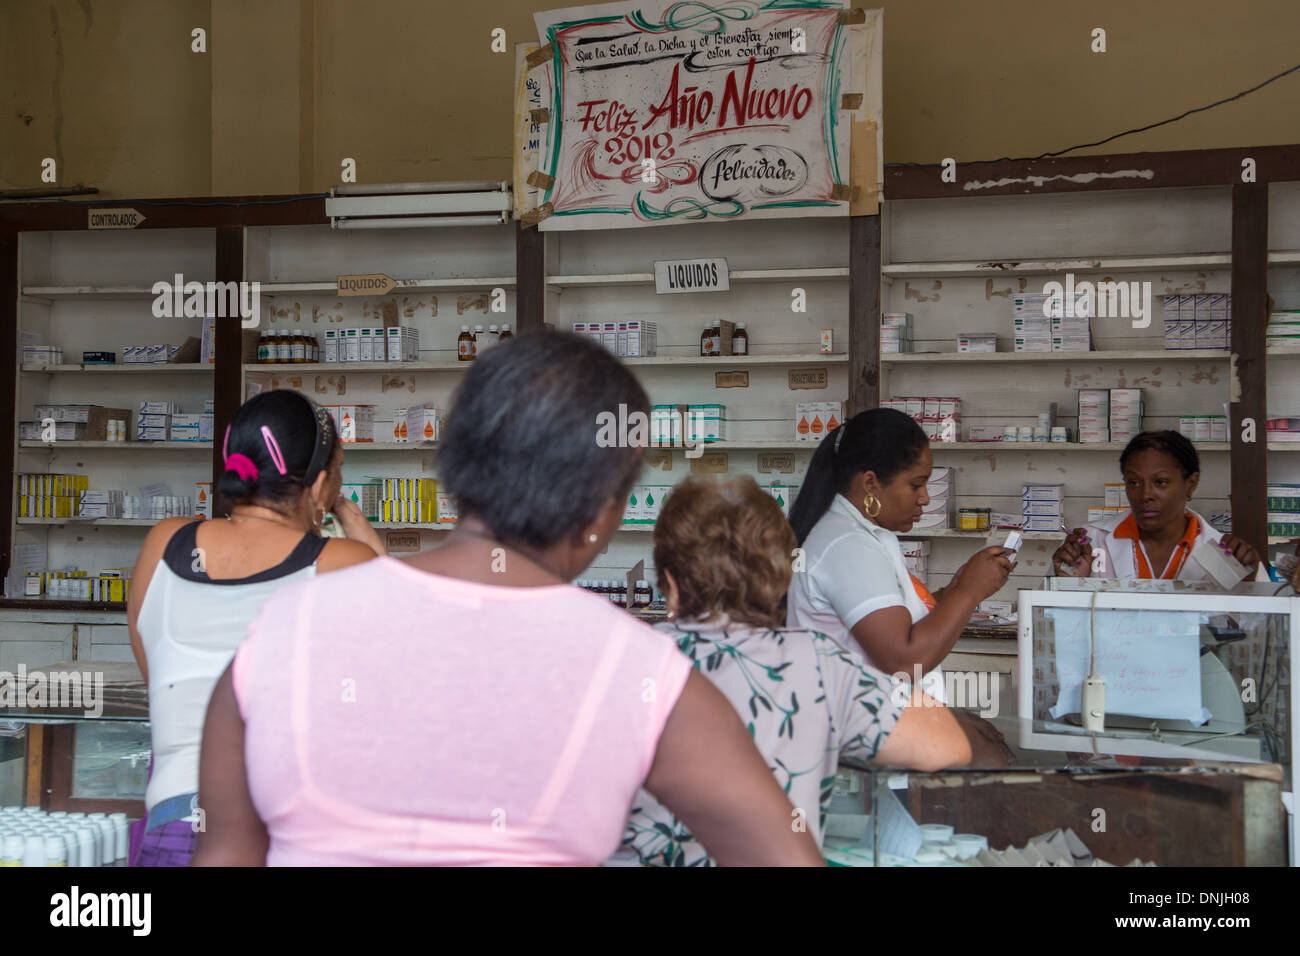 INTERIOR OF A PHARMACY (FARMACIA), PASEO DEL PRADO, HAVANA, CUBA, THE CARIBBEAN Stock Photo